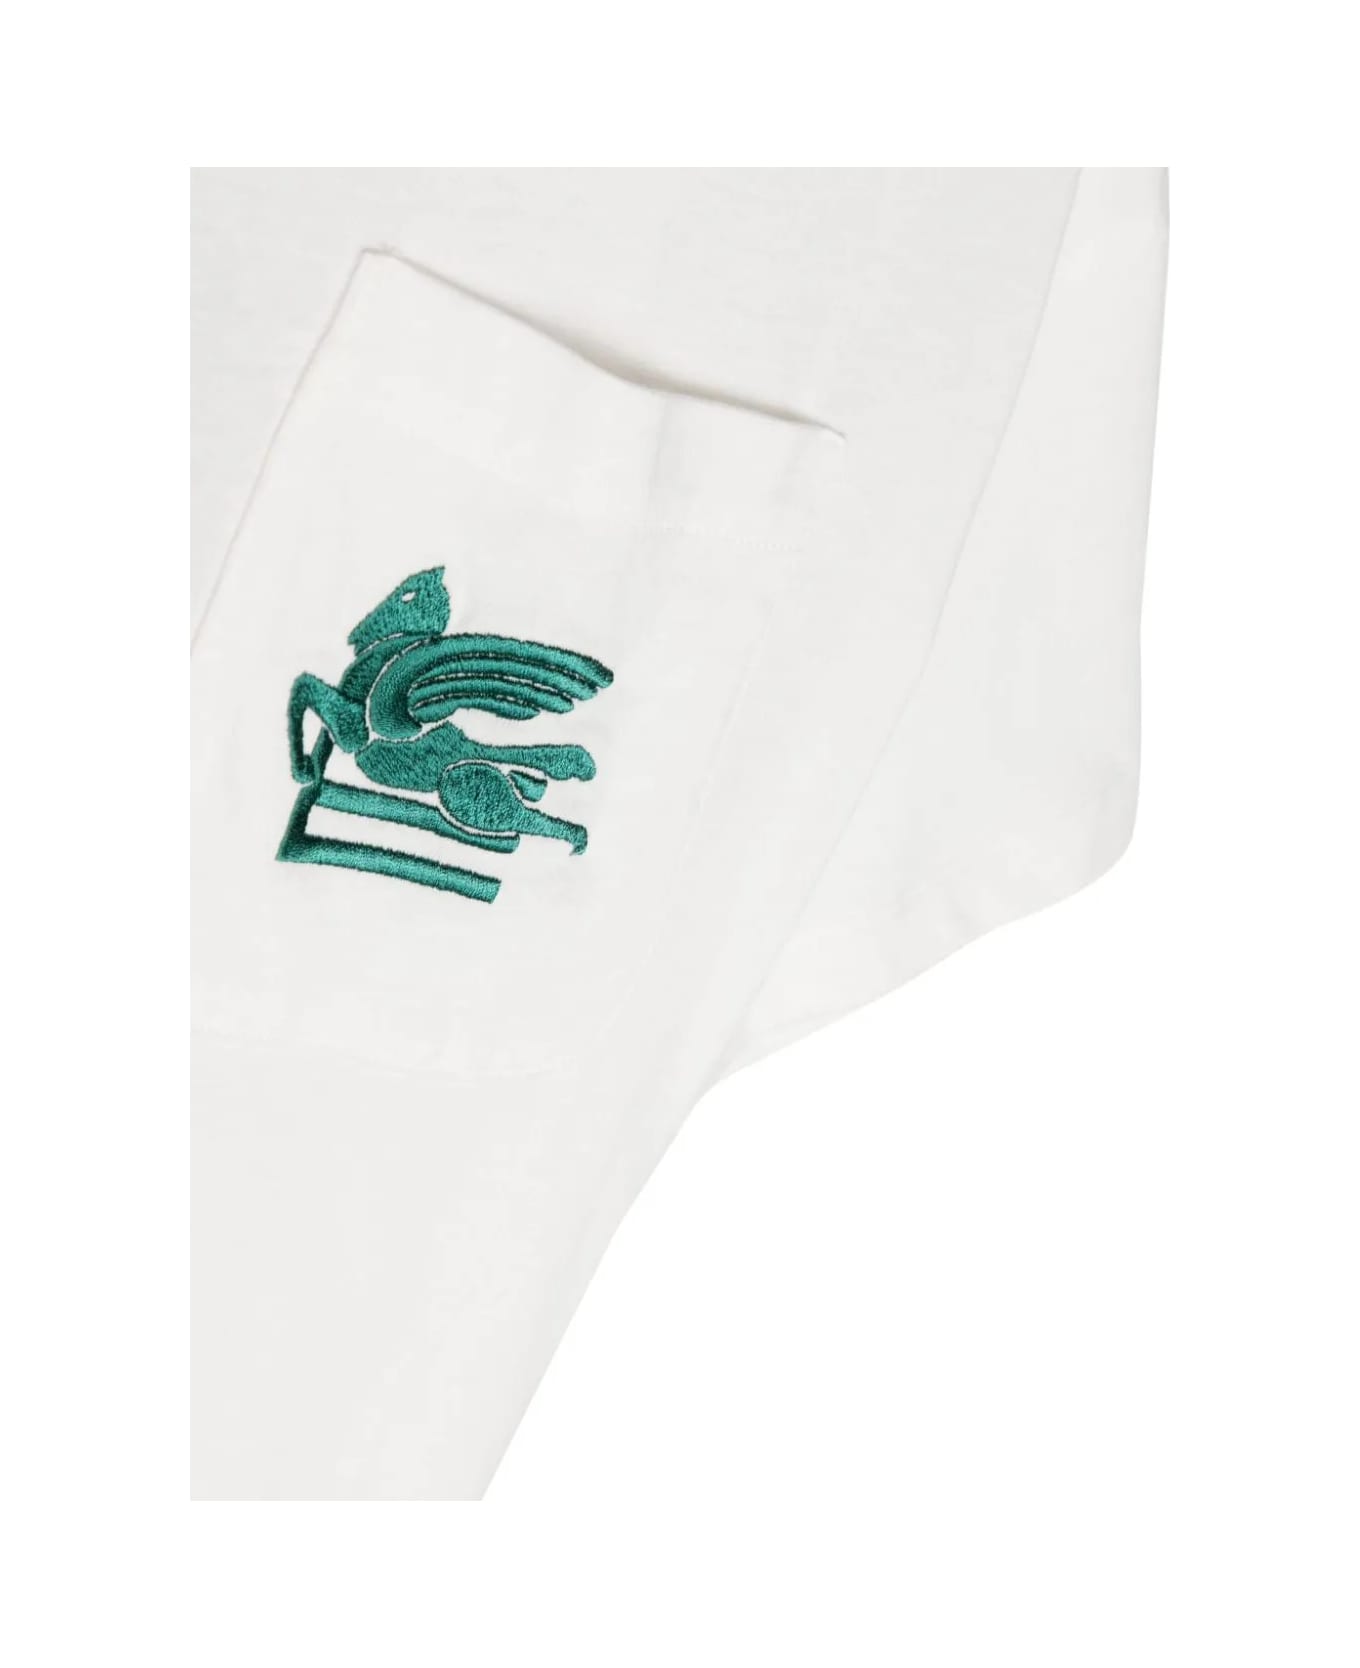 Etro White T-shirt With Etro Pegasus Logo In Green - Green